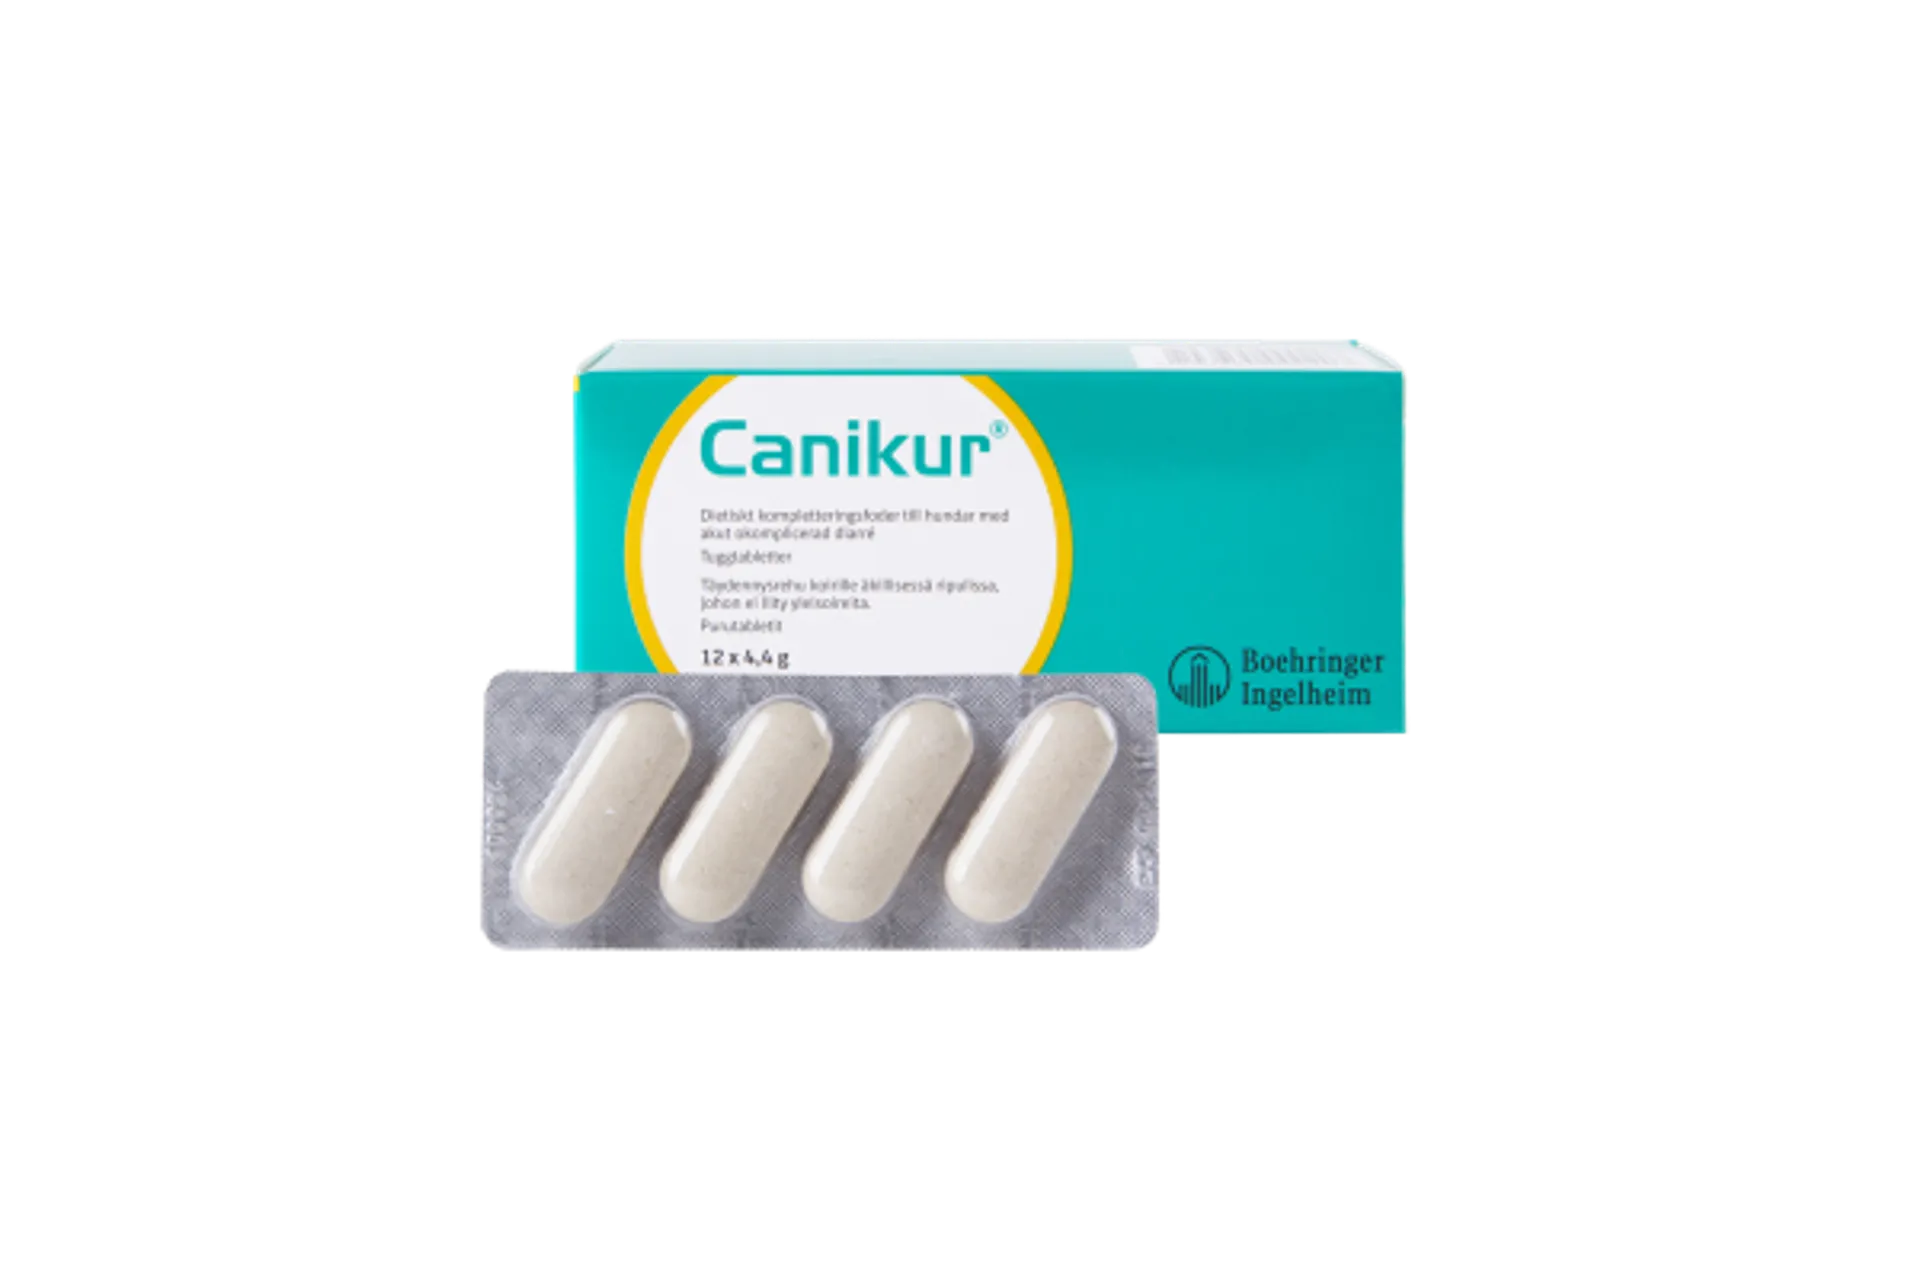 Vetcare Canikur tabletit 12 x 4,4 g